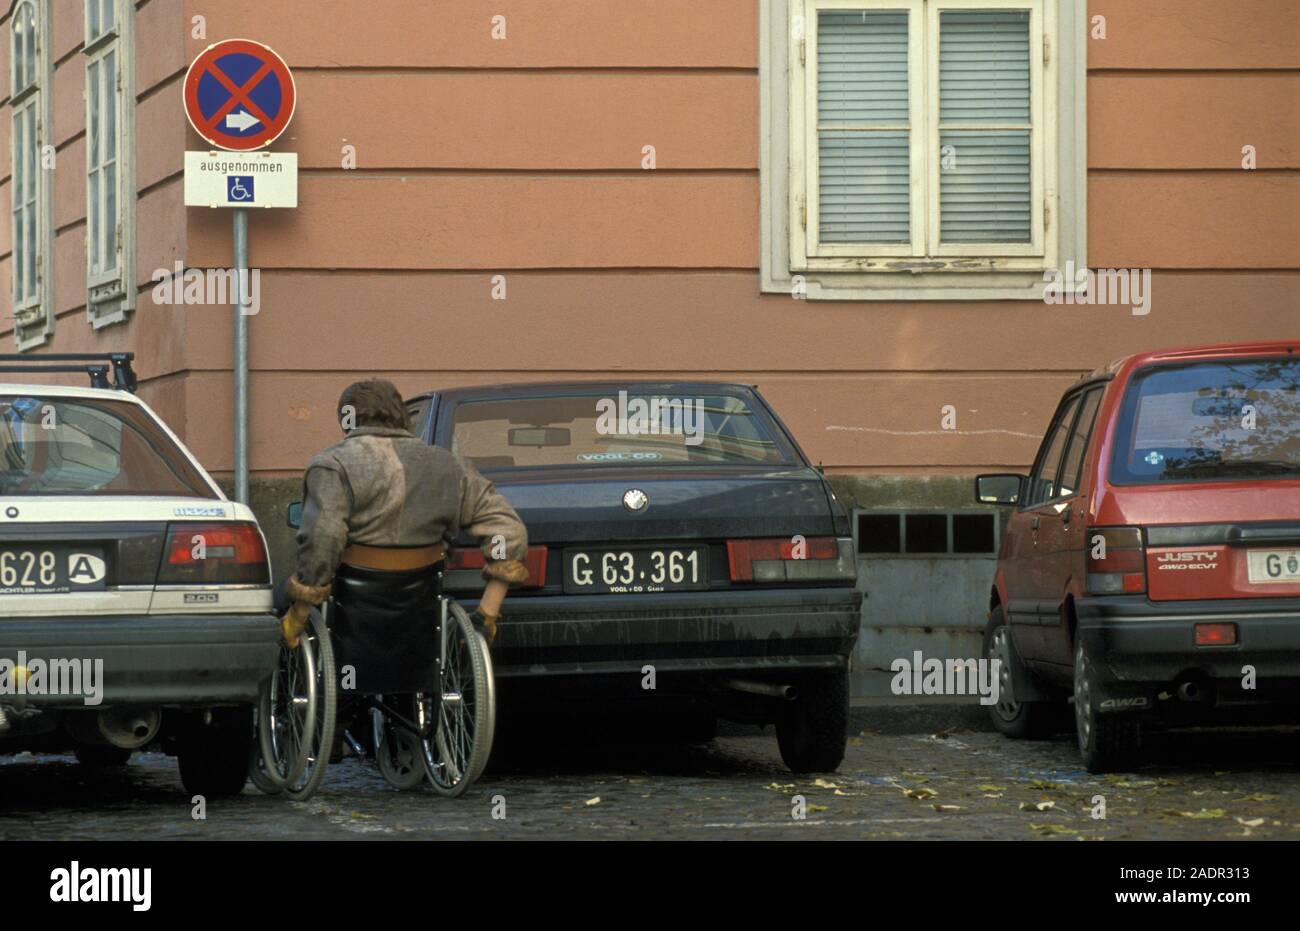 Rollstuhlfahrer - Personne handicapée Banque D'Images